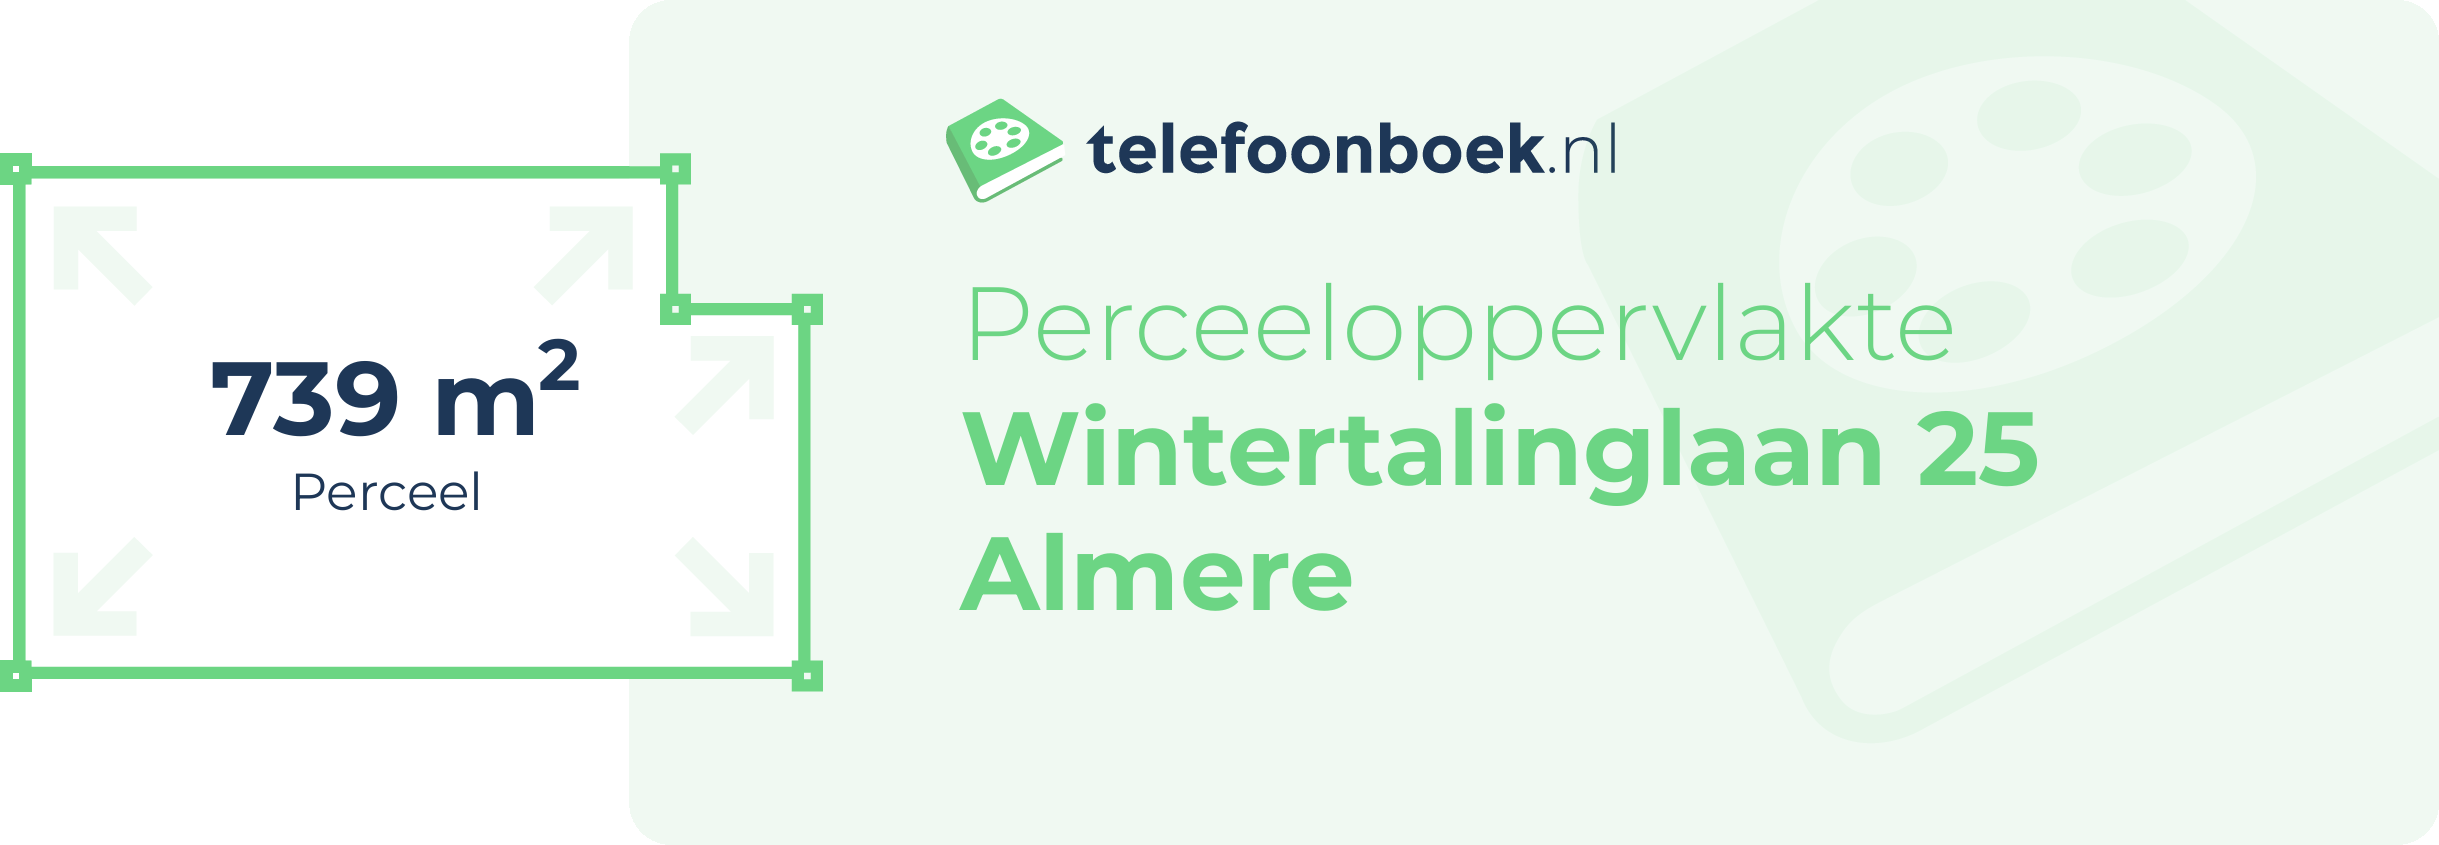 Perceeloppervlakte Wintertalinglaan 25 Almere